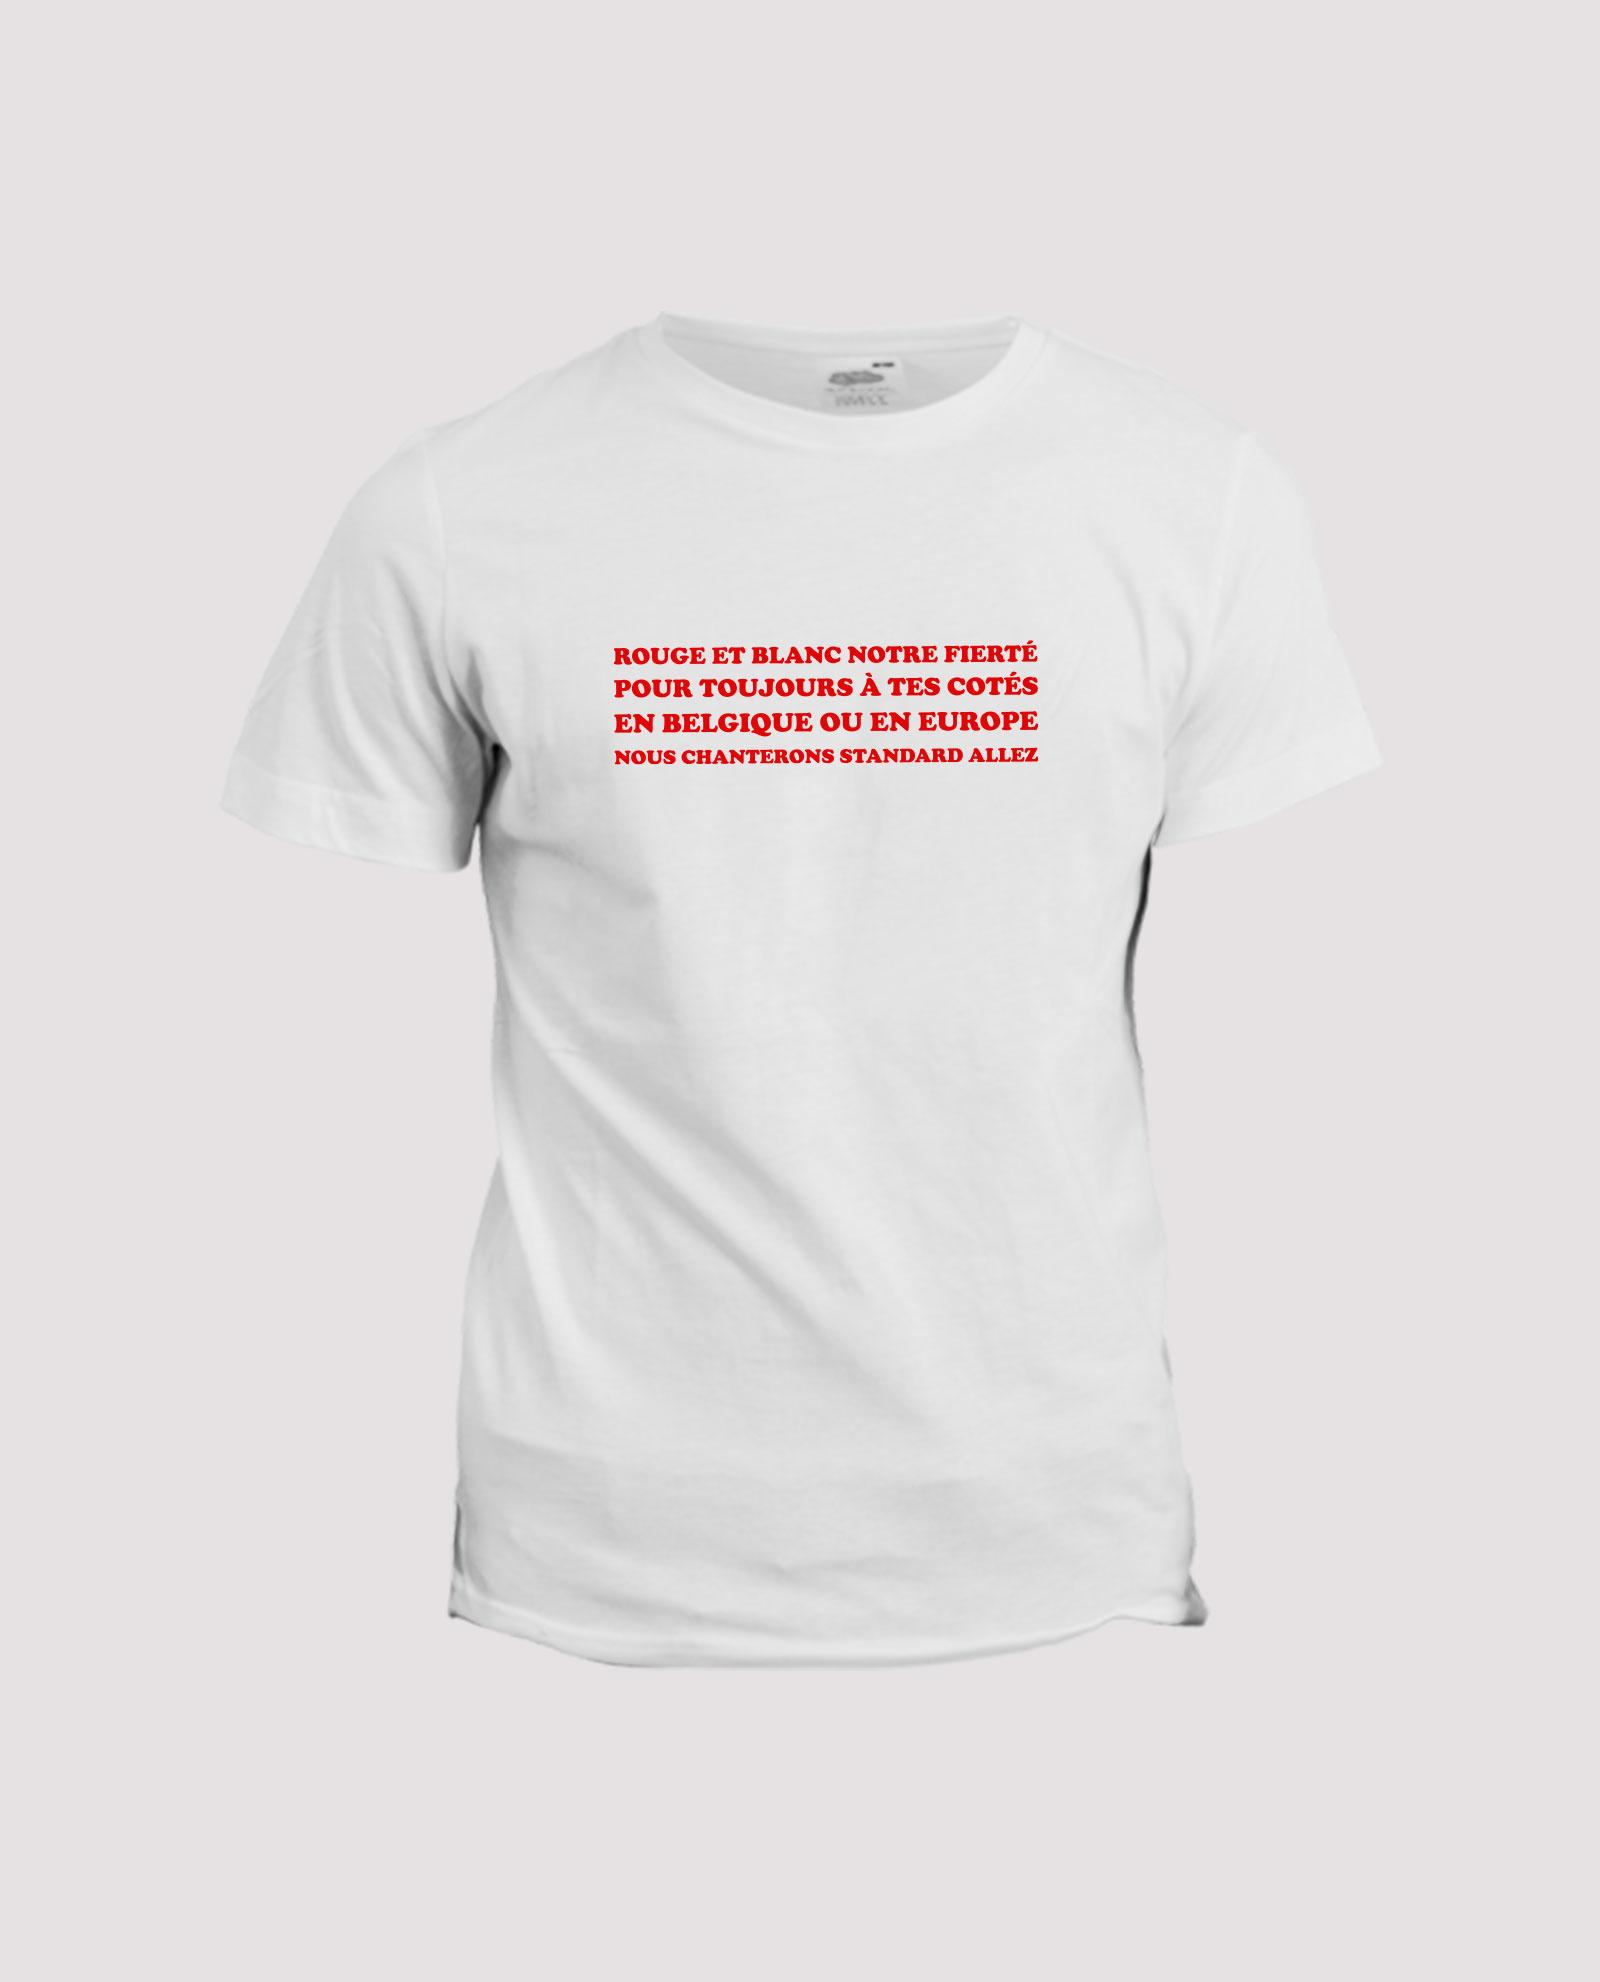 la-ligne-shop-t-shirt-blanc-chant-supporter-belgique-standard-de-liege-rouge-et-blanc-nortre-fierte